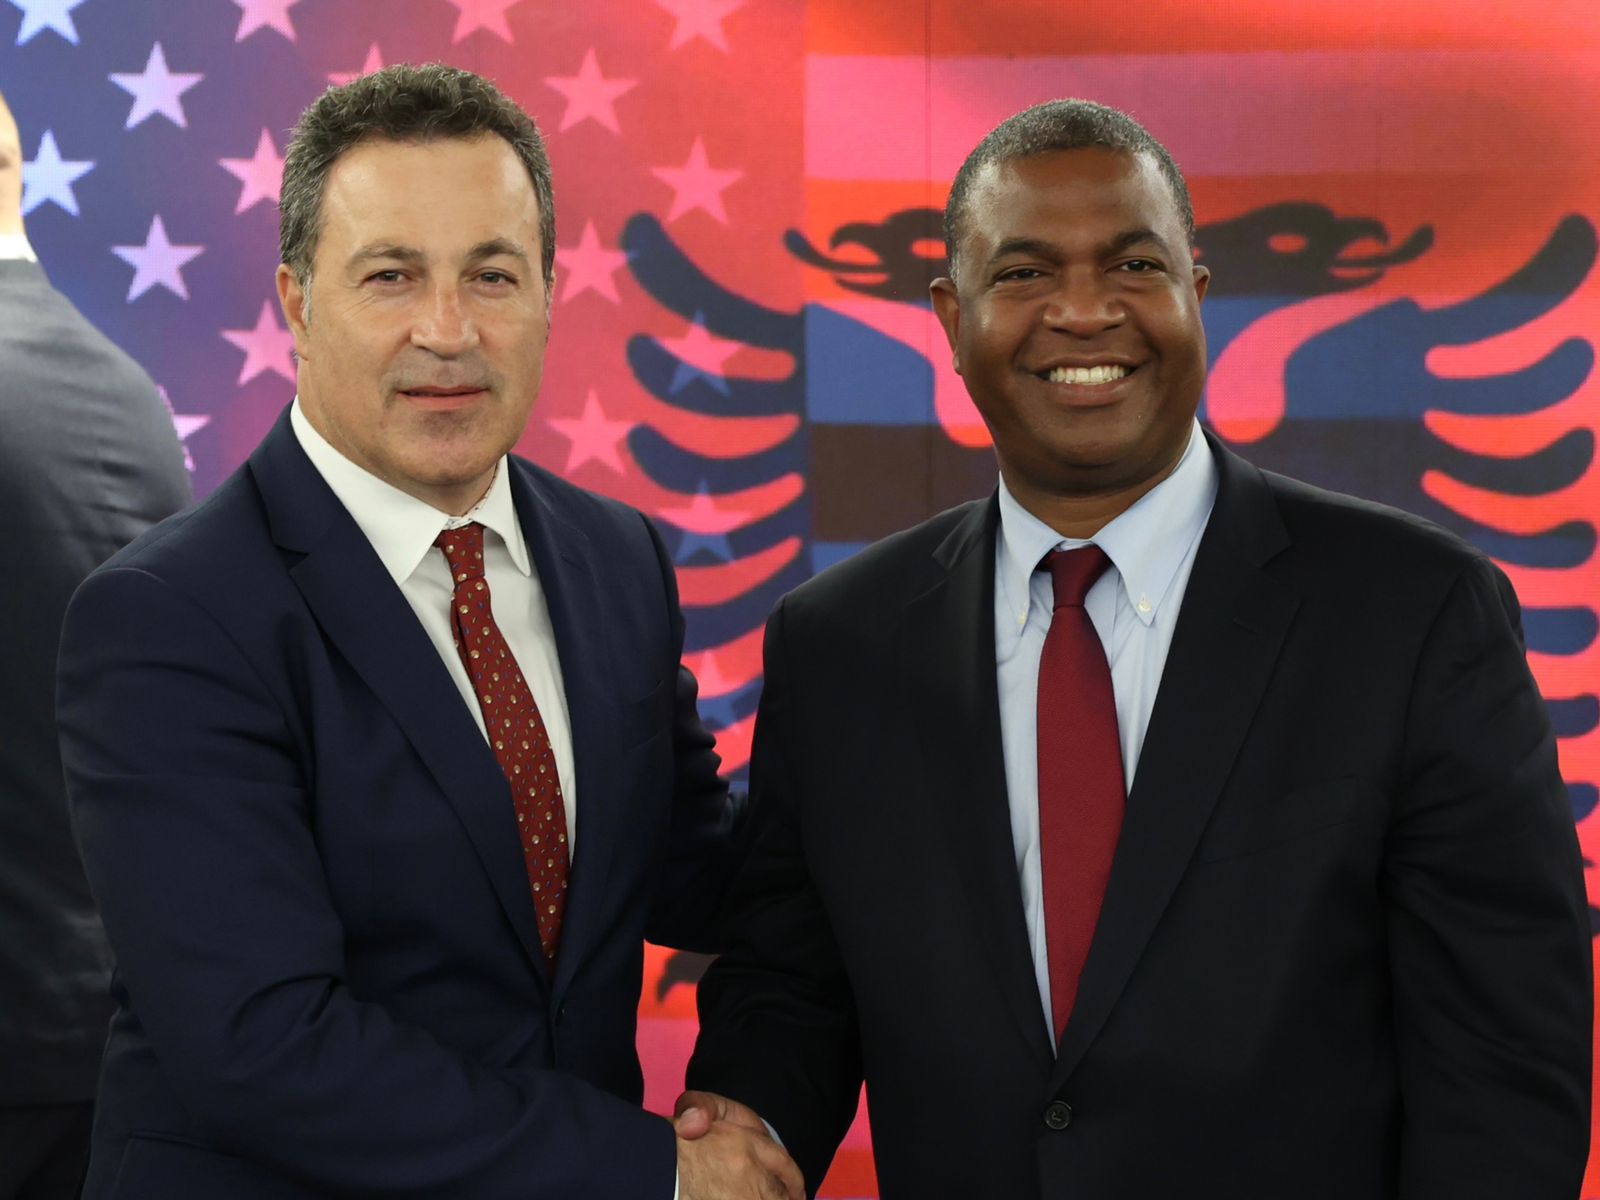 SHBA Shqipëri  konsultime dypalëshe në fushën e Mbrojtjes